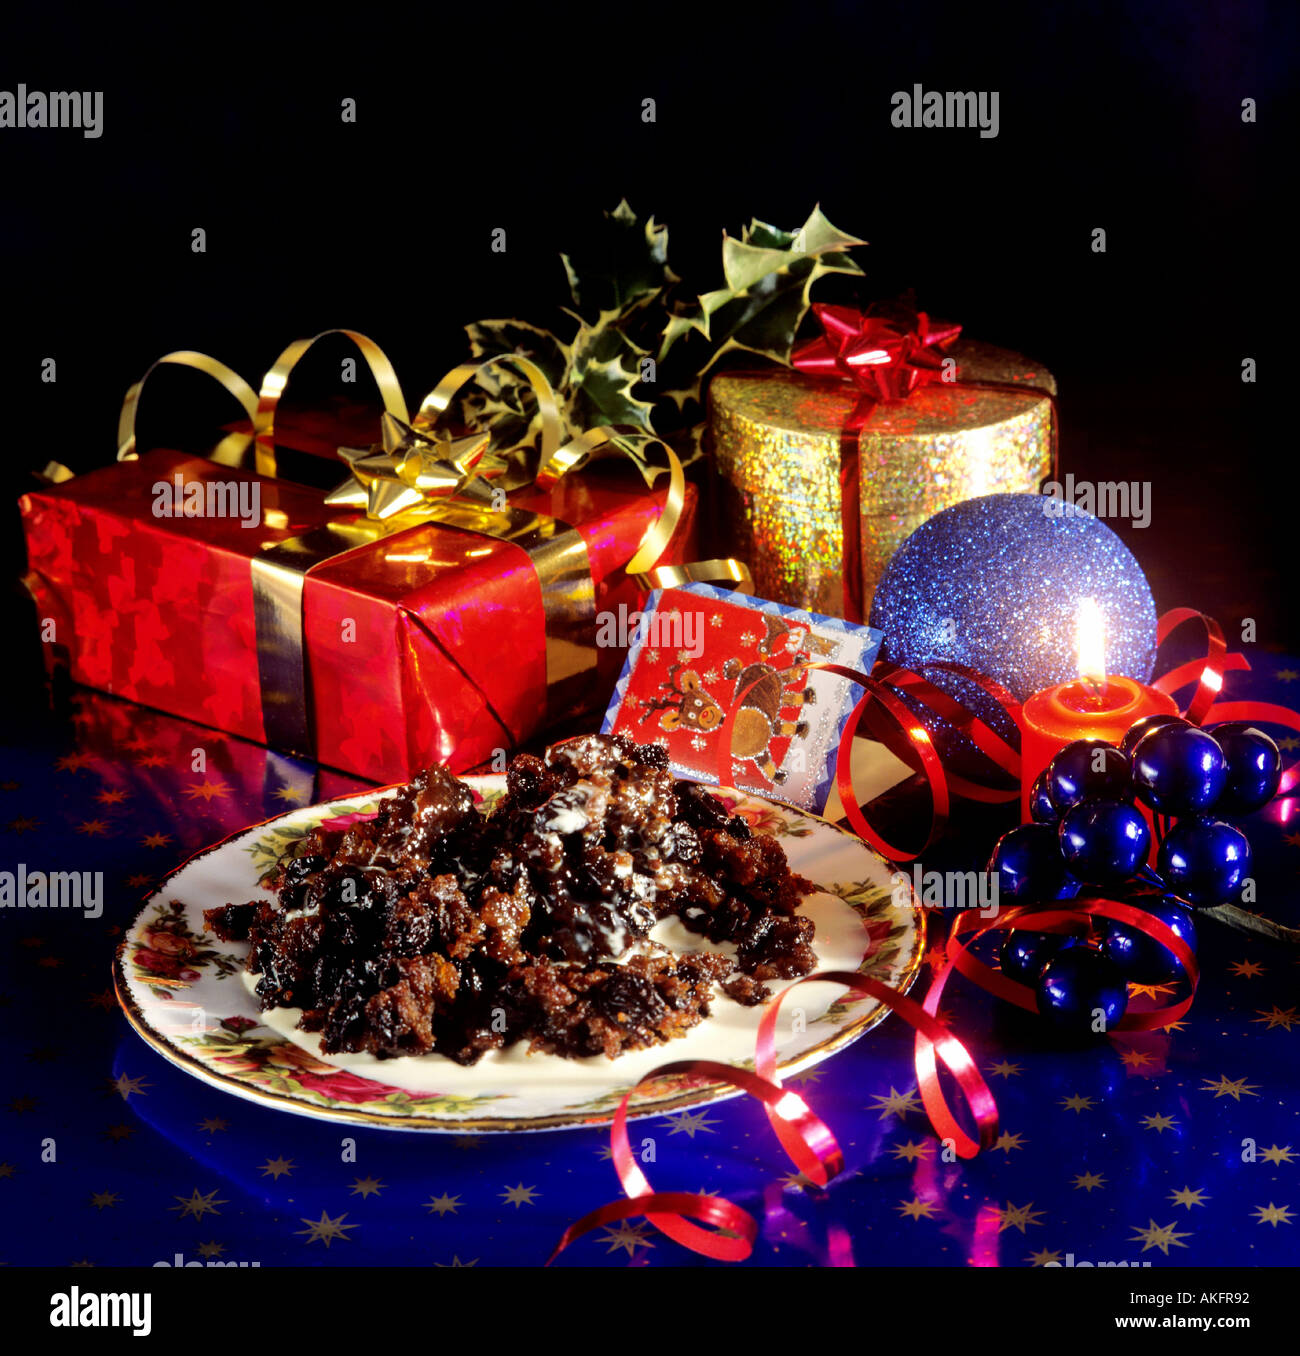 traditionelle englische Weihnachten Plumpudding nur zur redaktionellen Verwendung Stockfoto